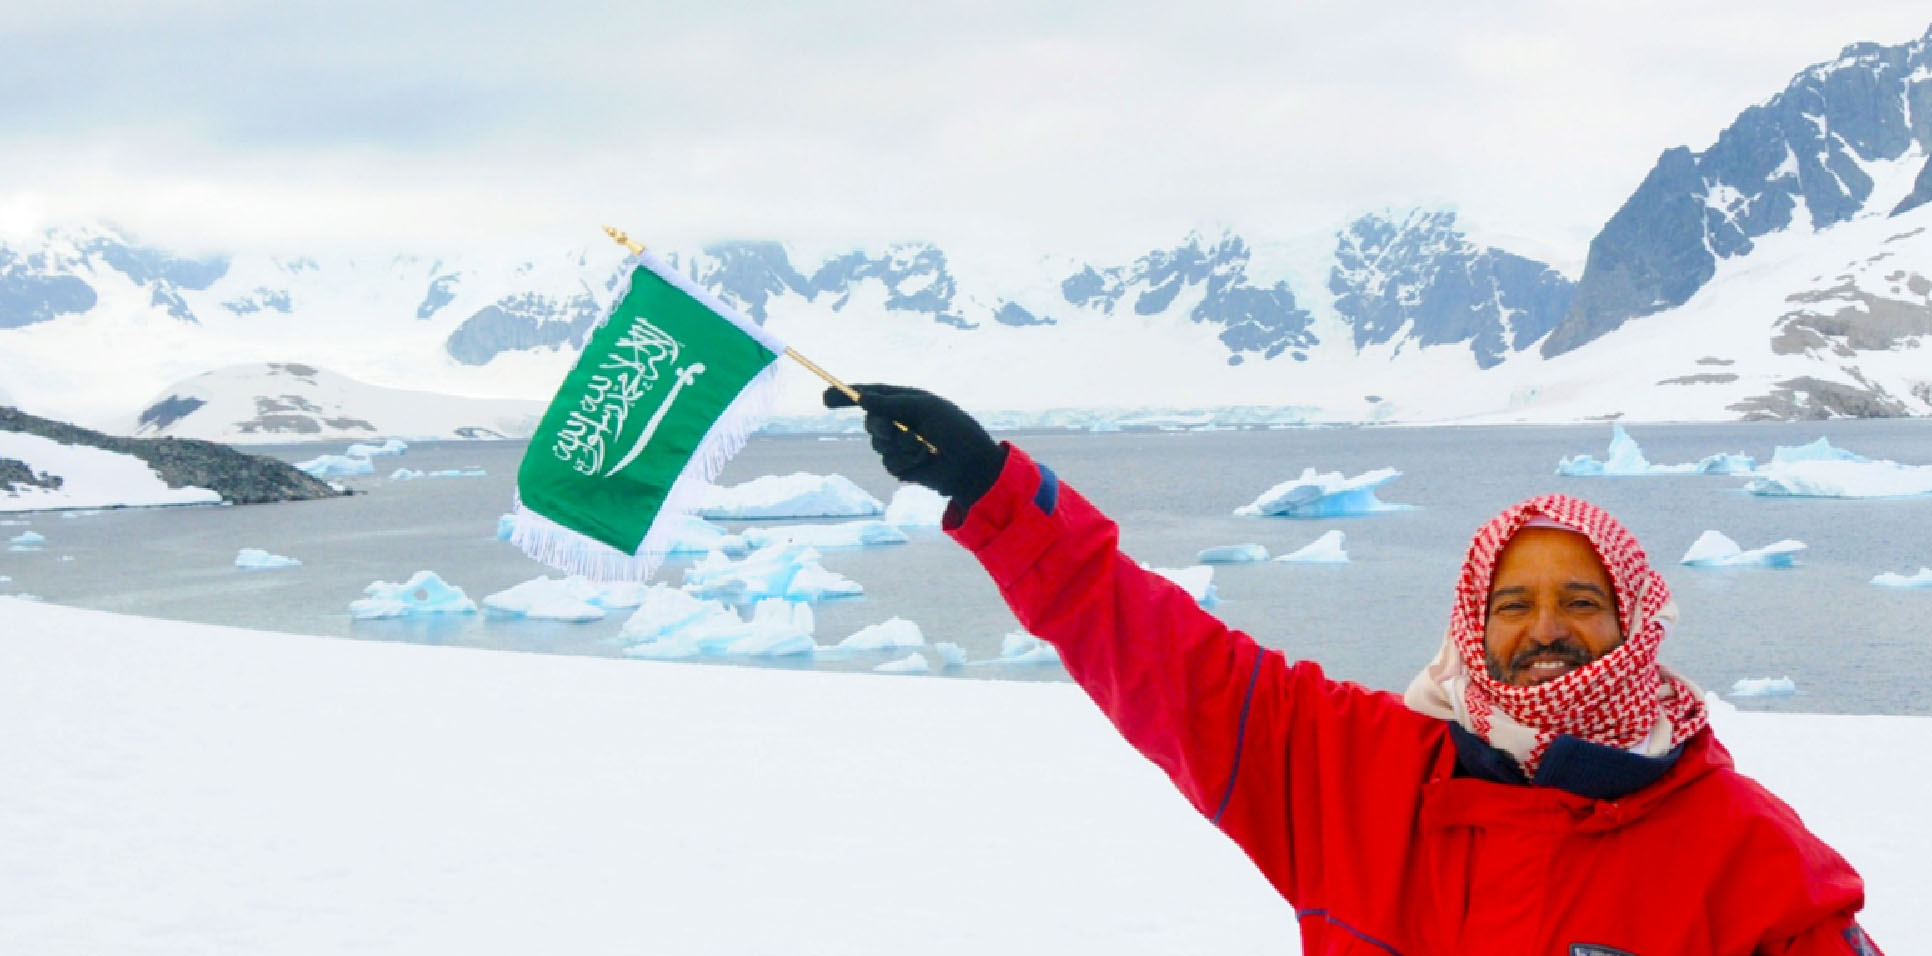 بالصور.. أول جيولوجي سعودي يغامر لكشف أسرار القارة القطبية الجنوبية في رحلة الغموض